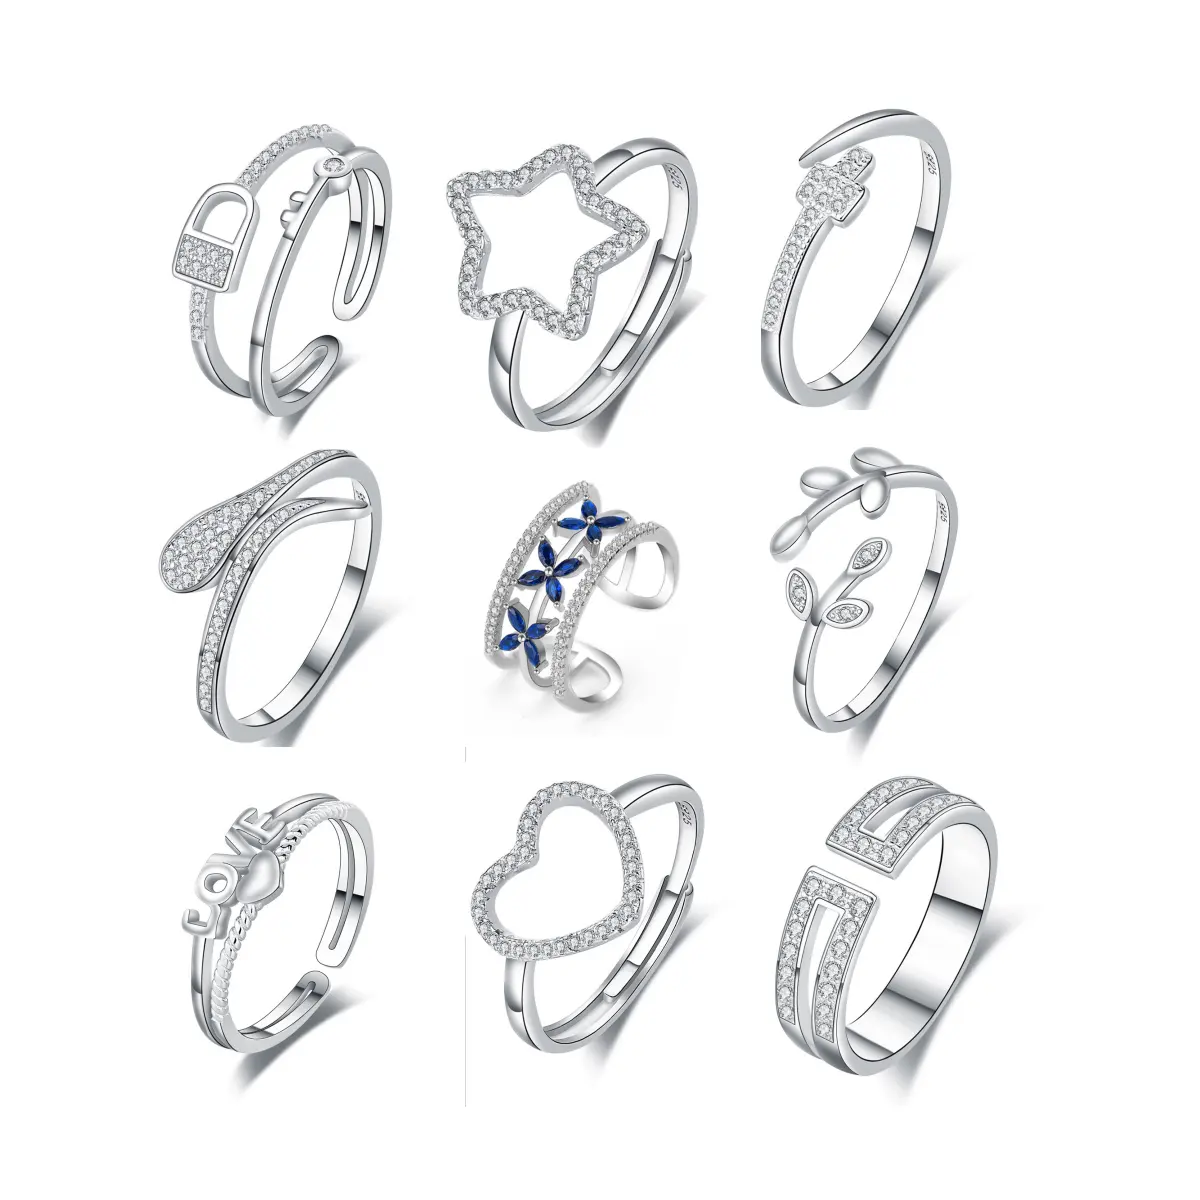 Großhandel 925 Silber ringe Schmuck Frauen 925 Sterling Silber Diamantringe verstellbarer Ring Frauen Hochzeit Verlobung geschenk